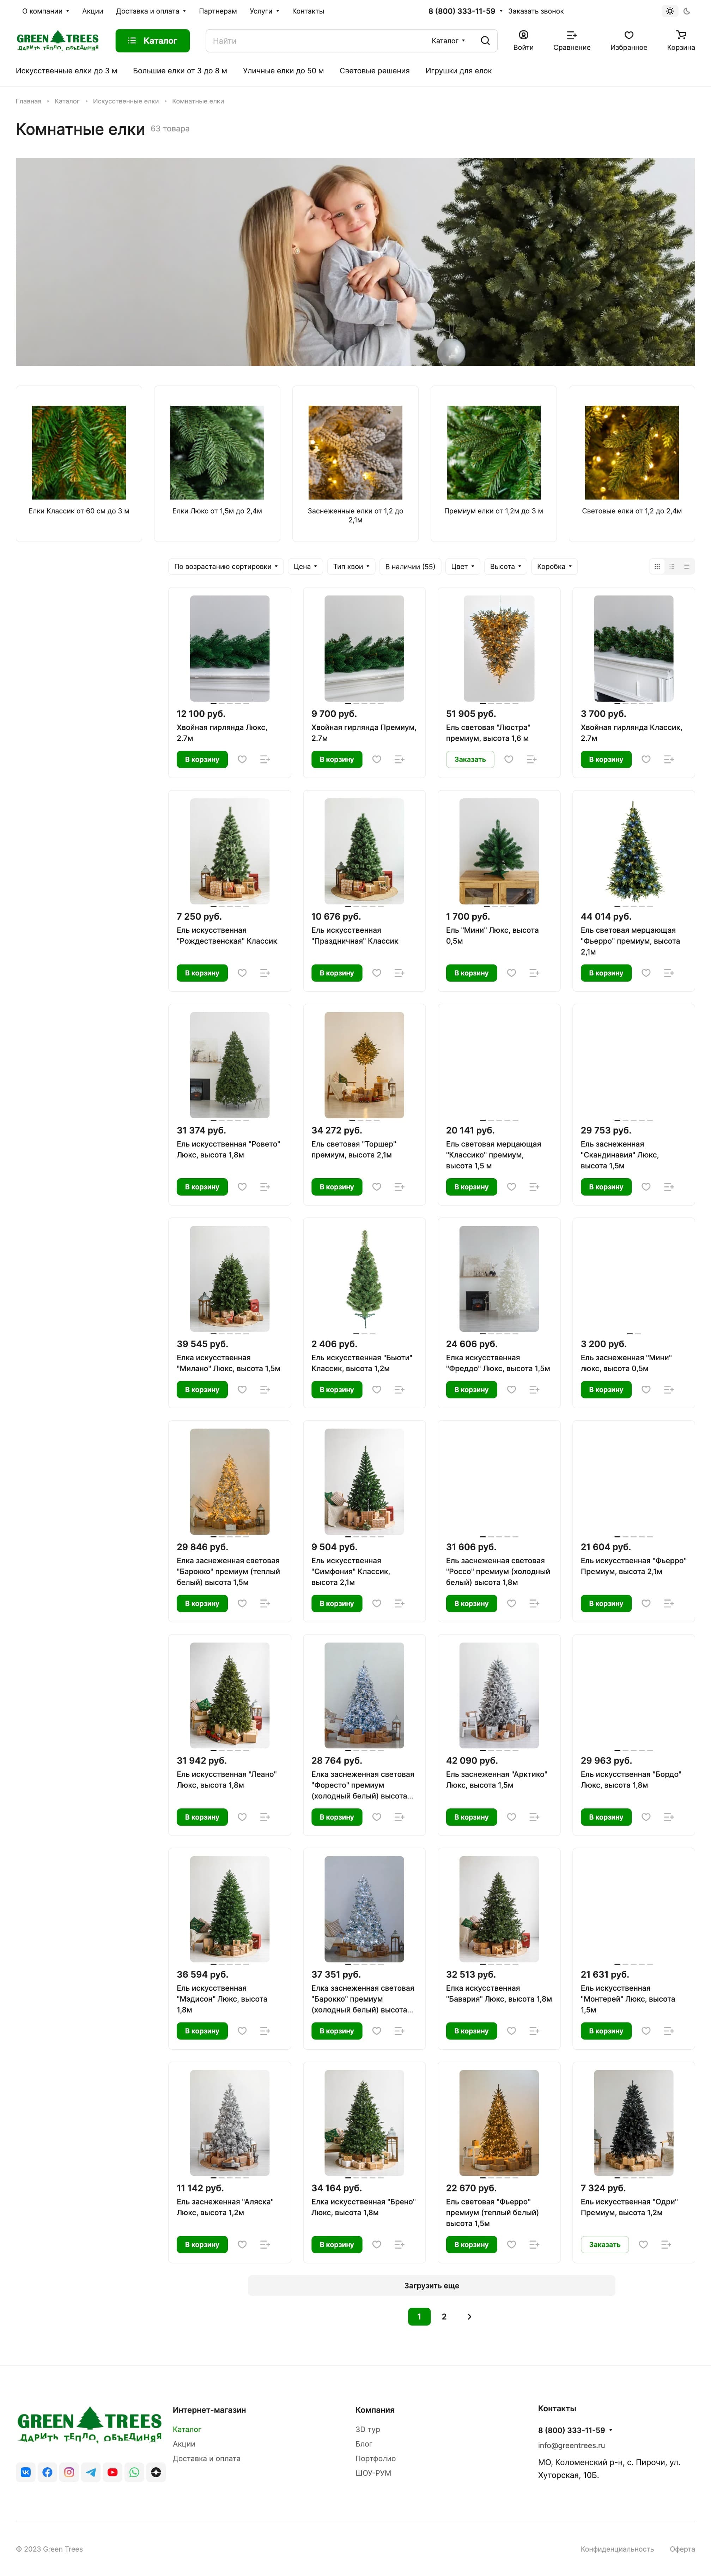 Пример посадочной страницы интернет-магазина с каталогом для продажи новогодних елок